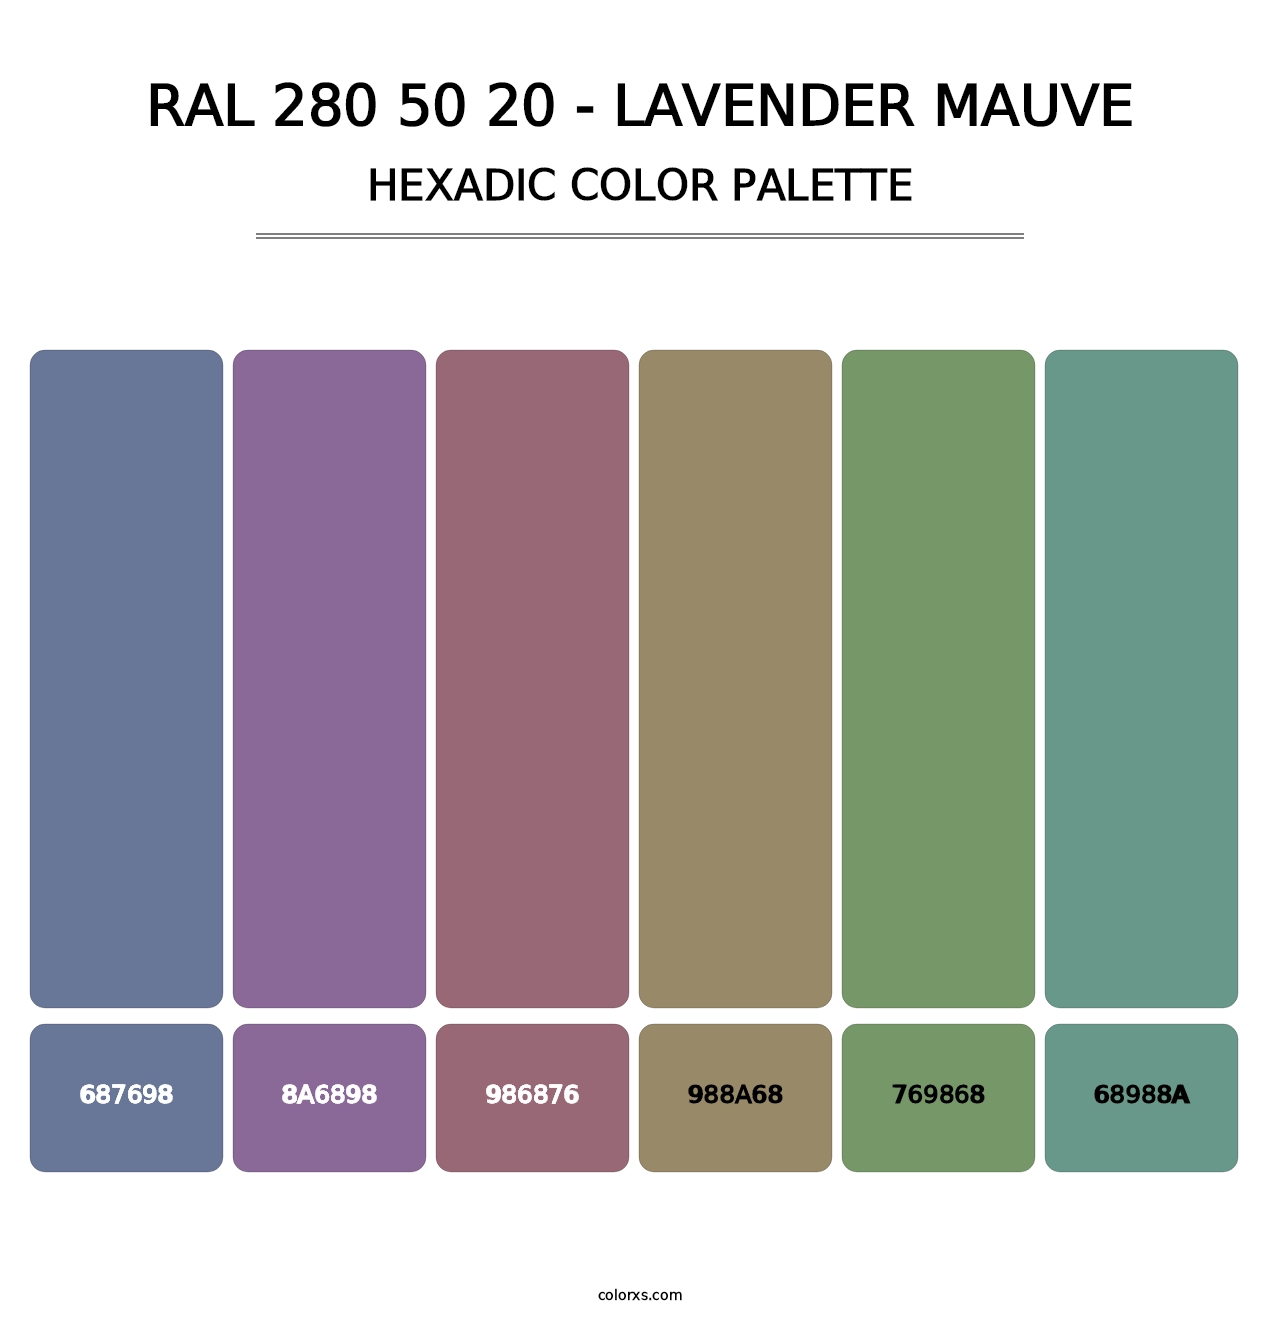 RAL 280 50 20 - Lavender Mauve - Hexadic Color Palette